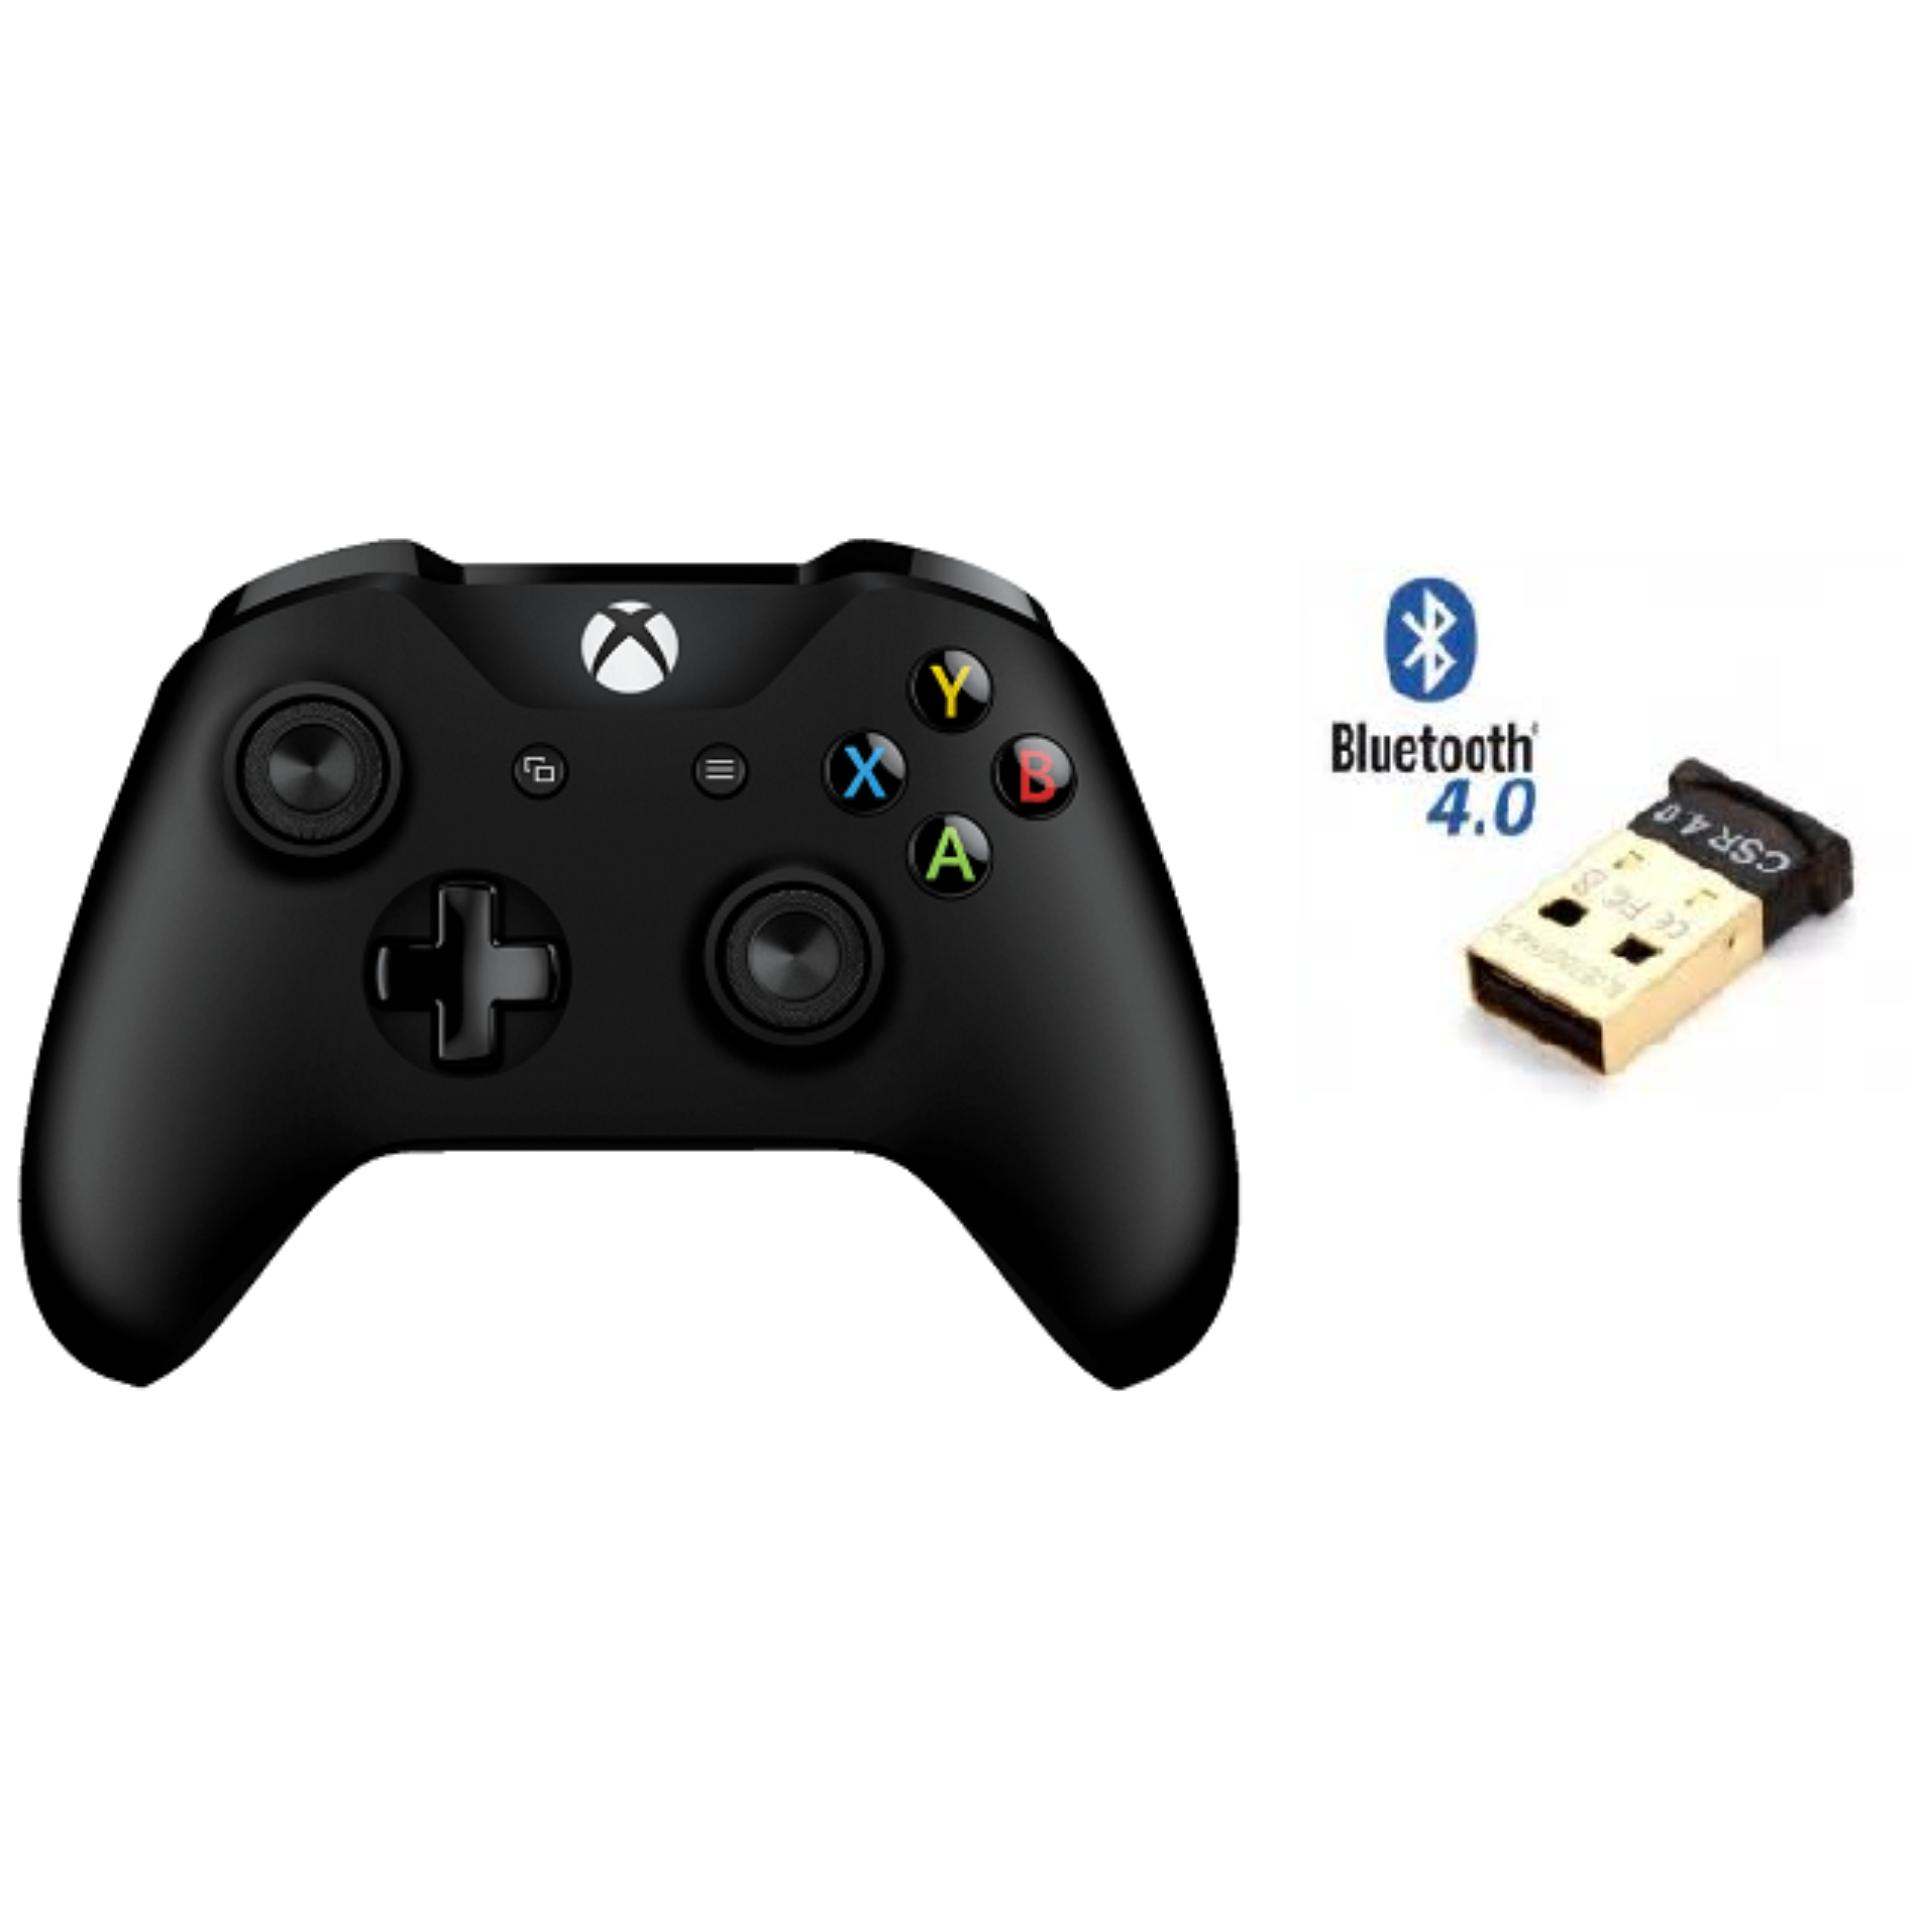 Tay cầm Xbox One S + USB bluetooth 4.0